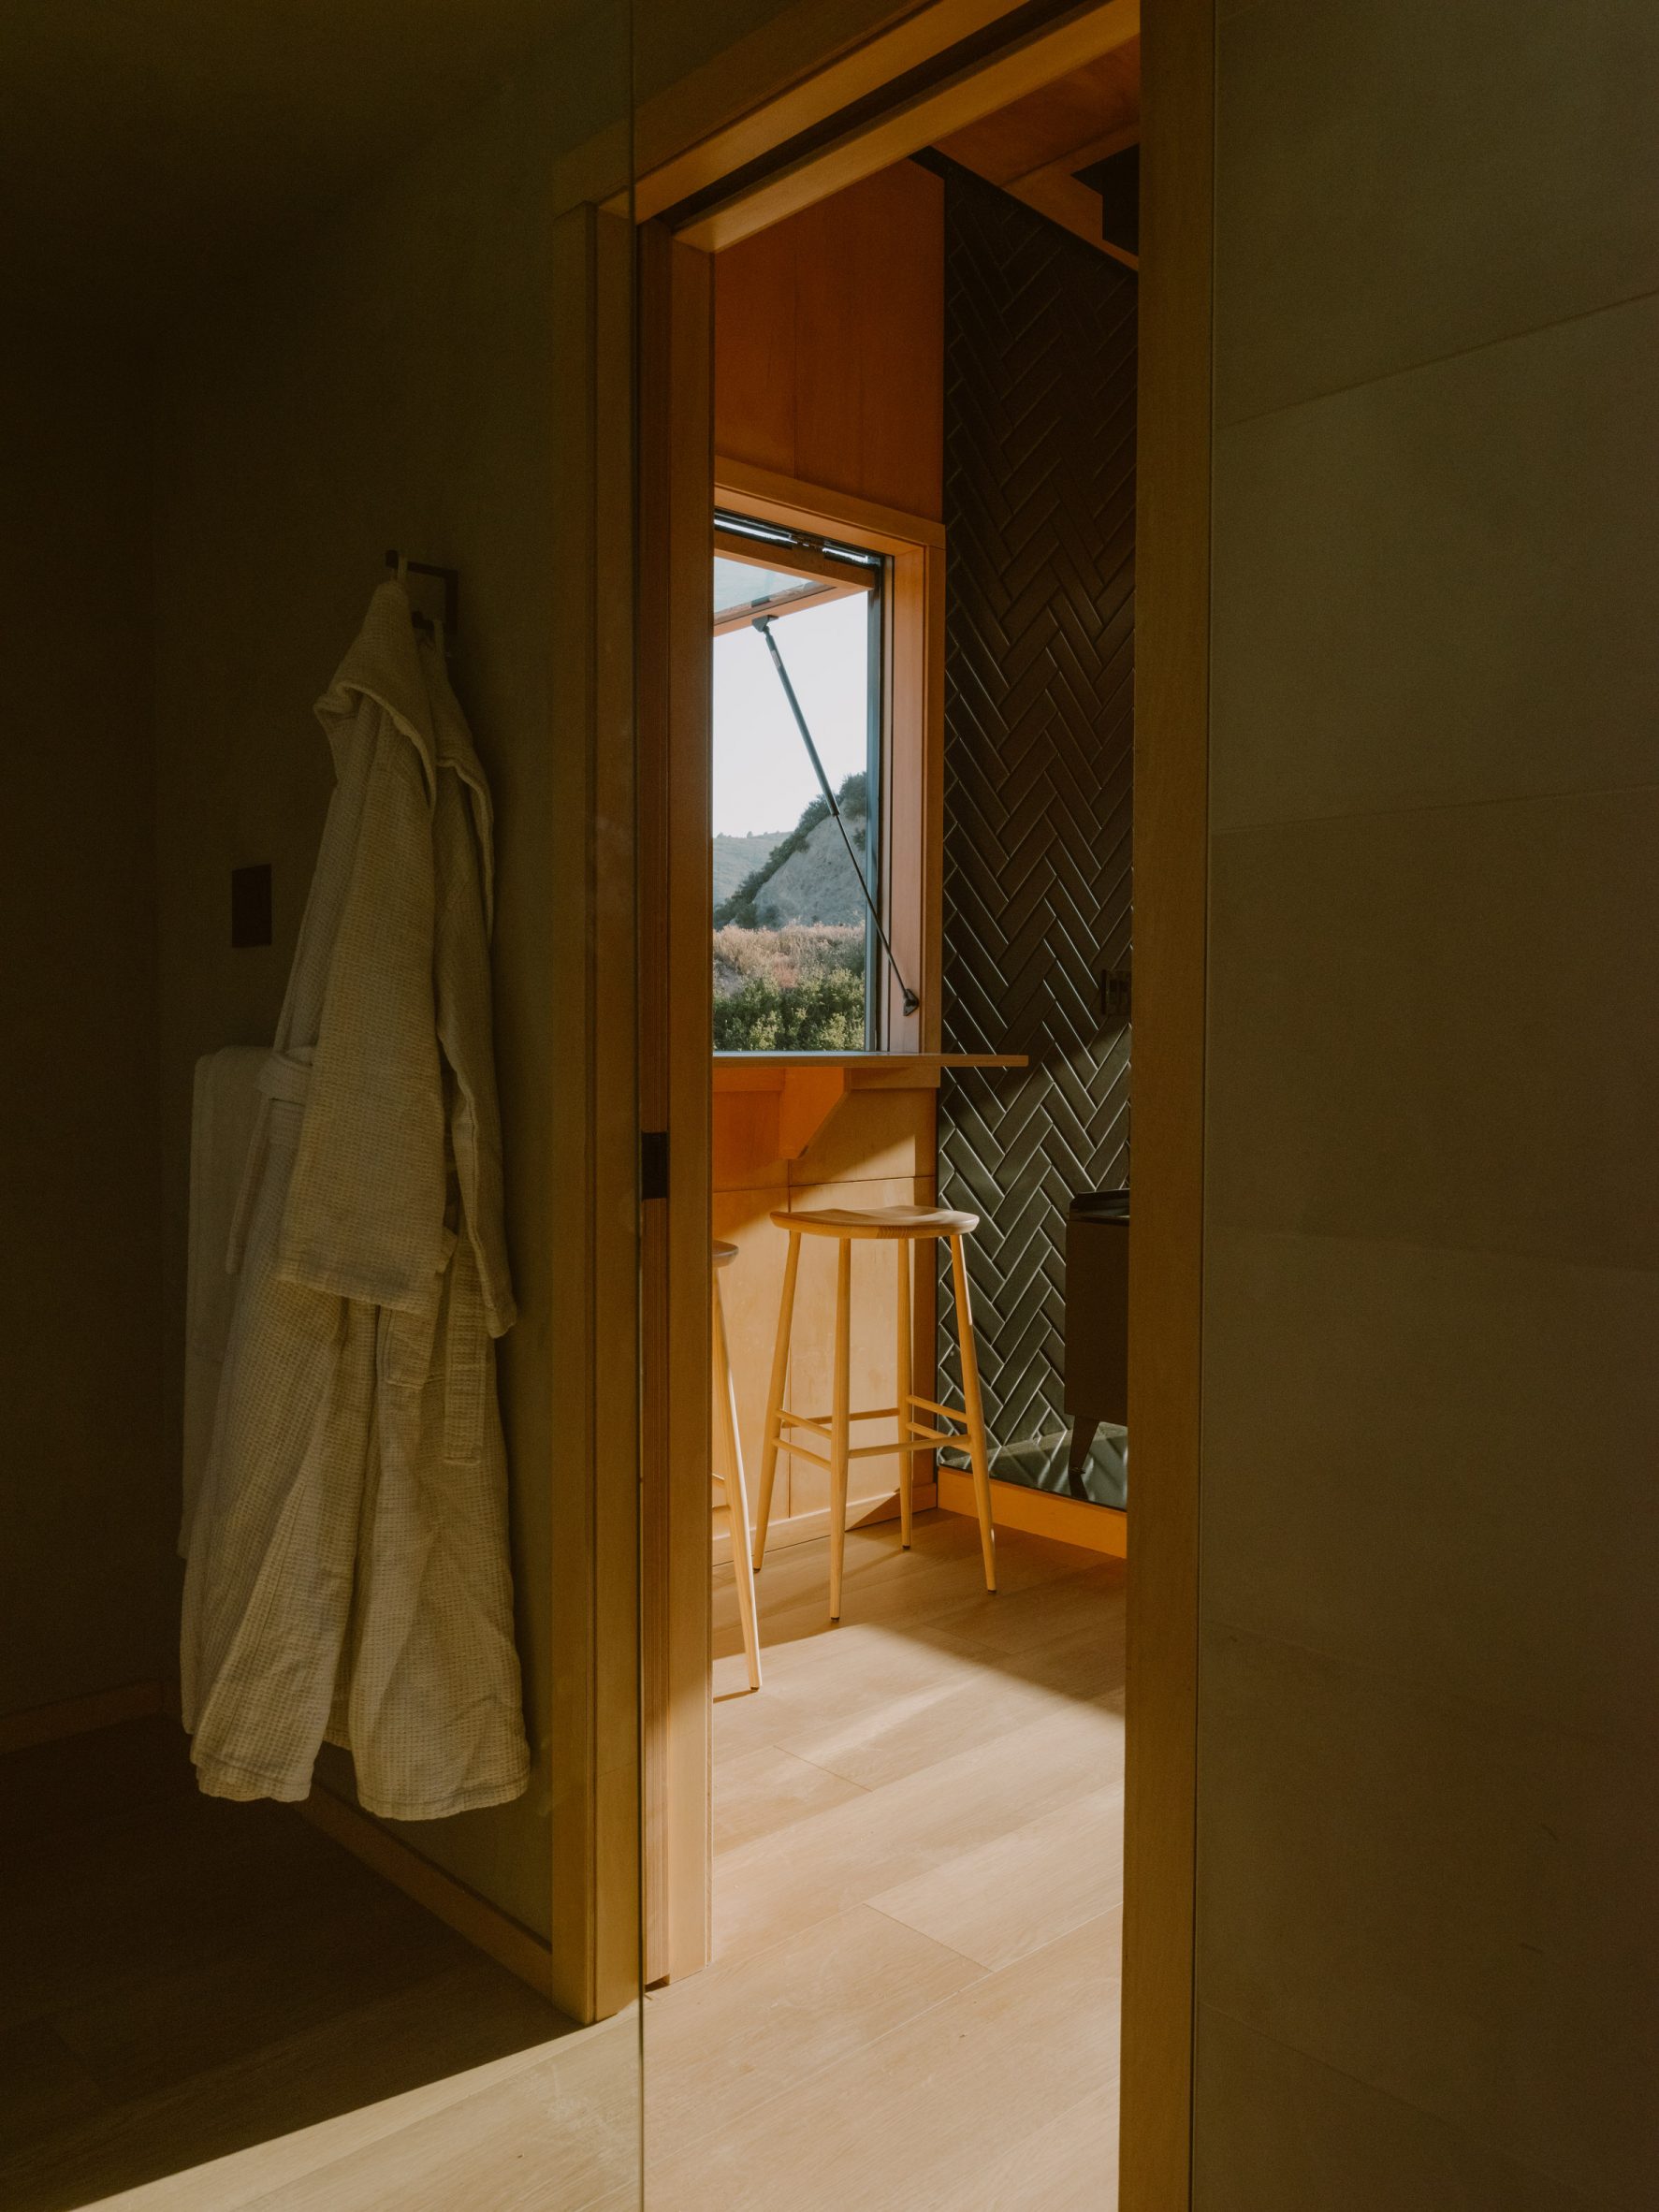 Window and bathrobe in micro cabin